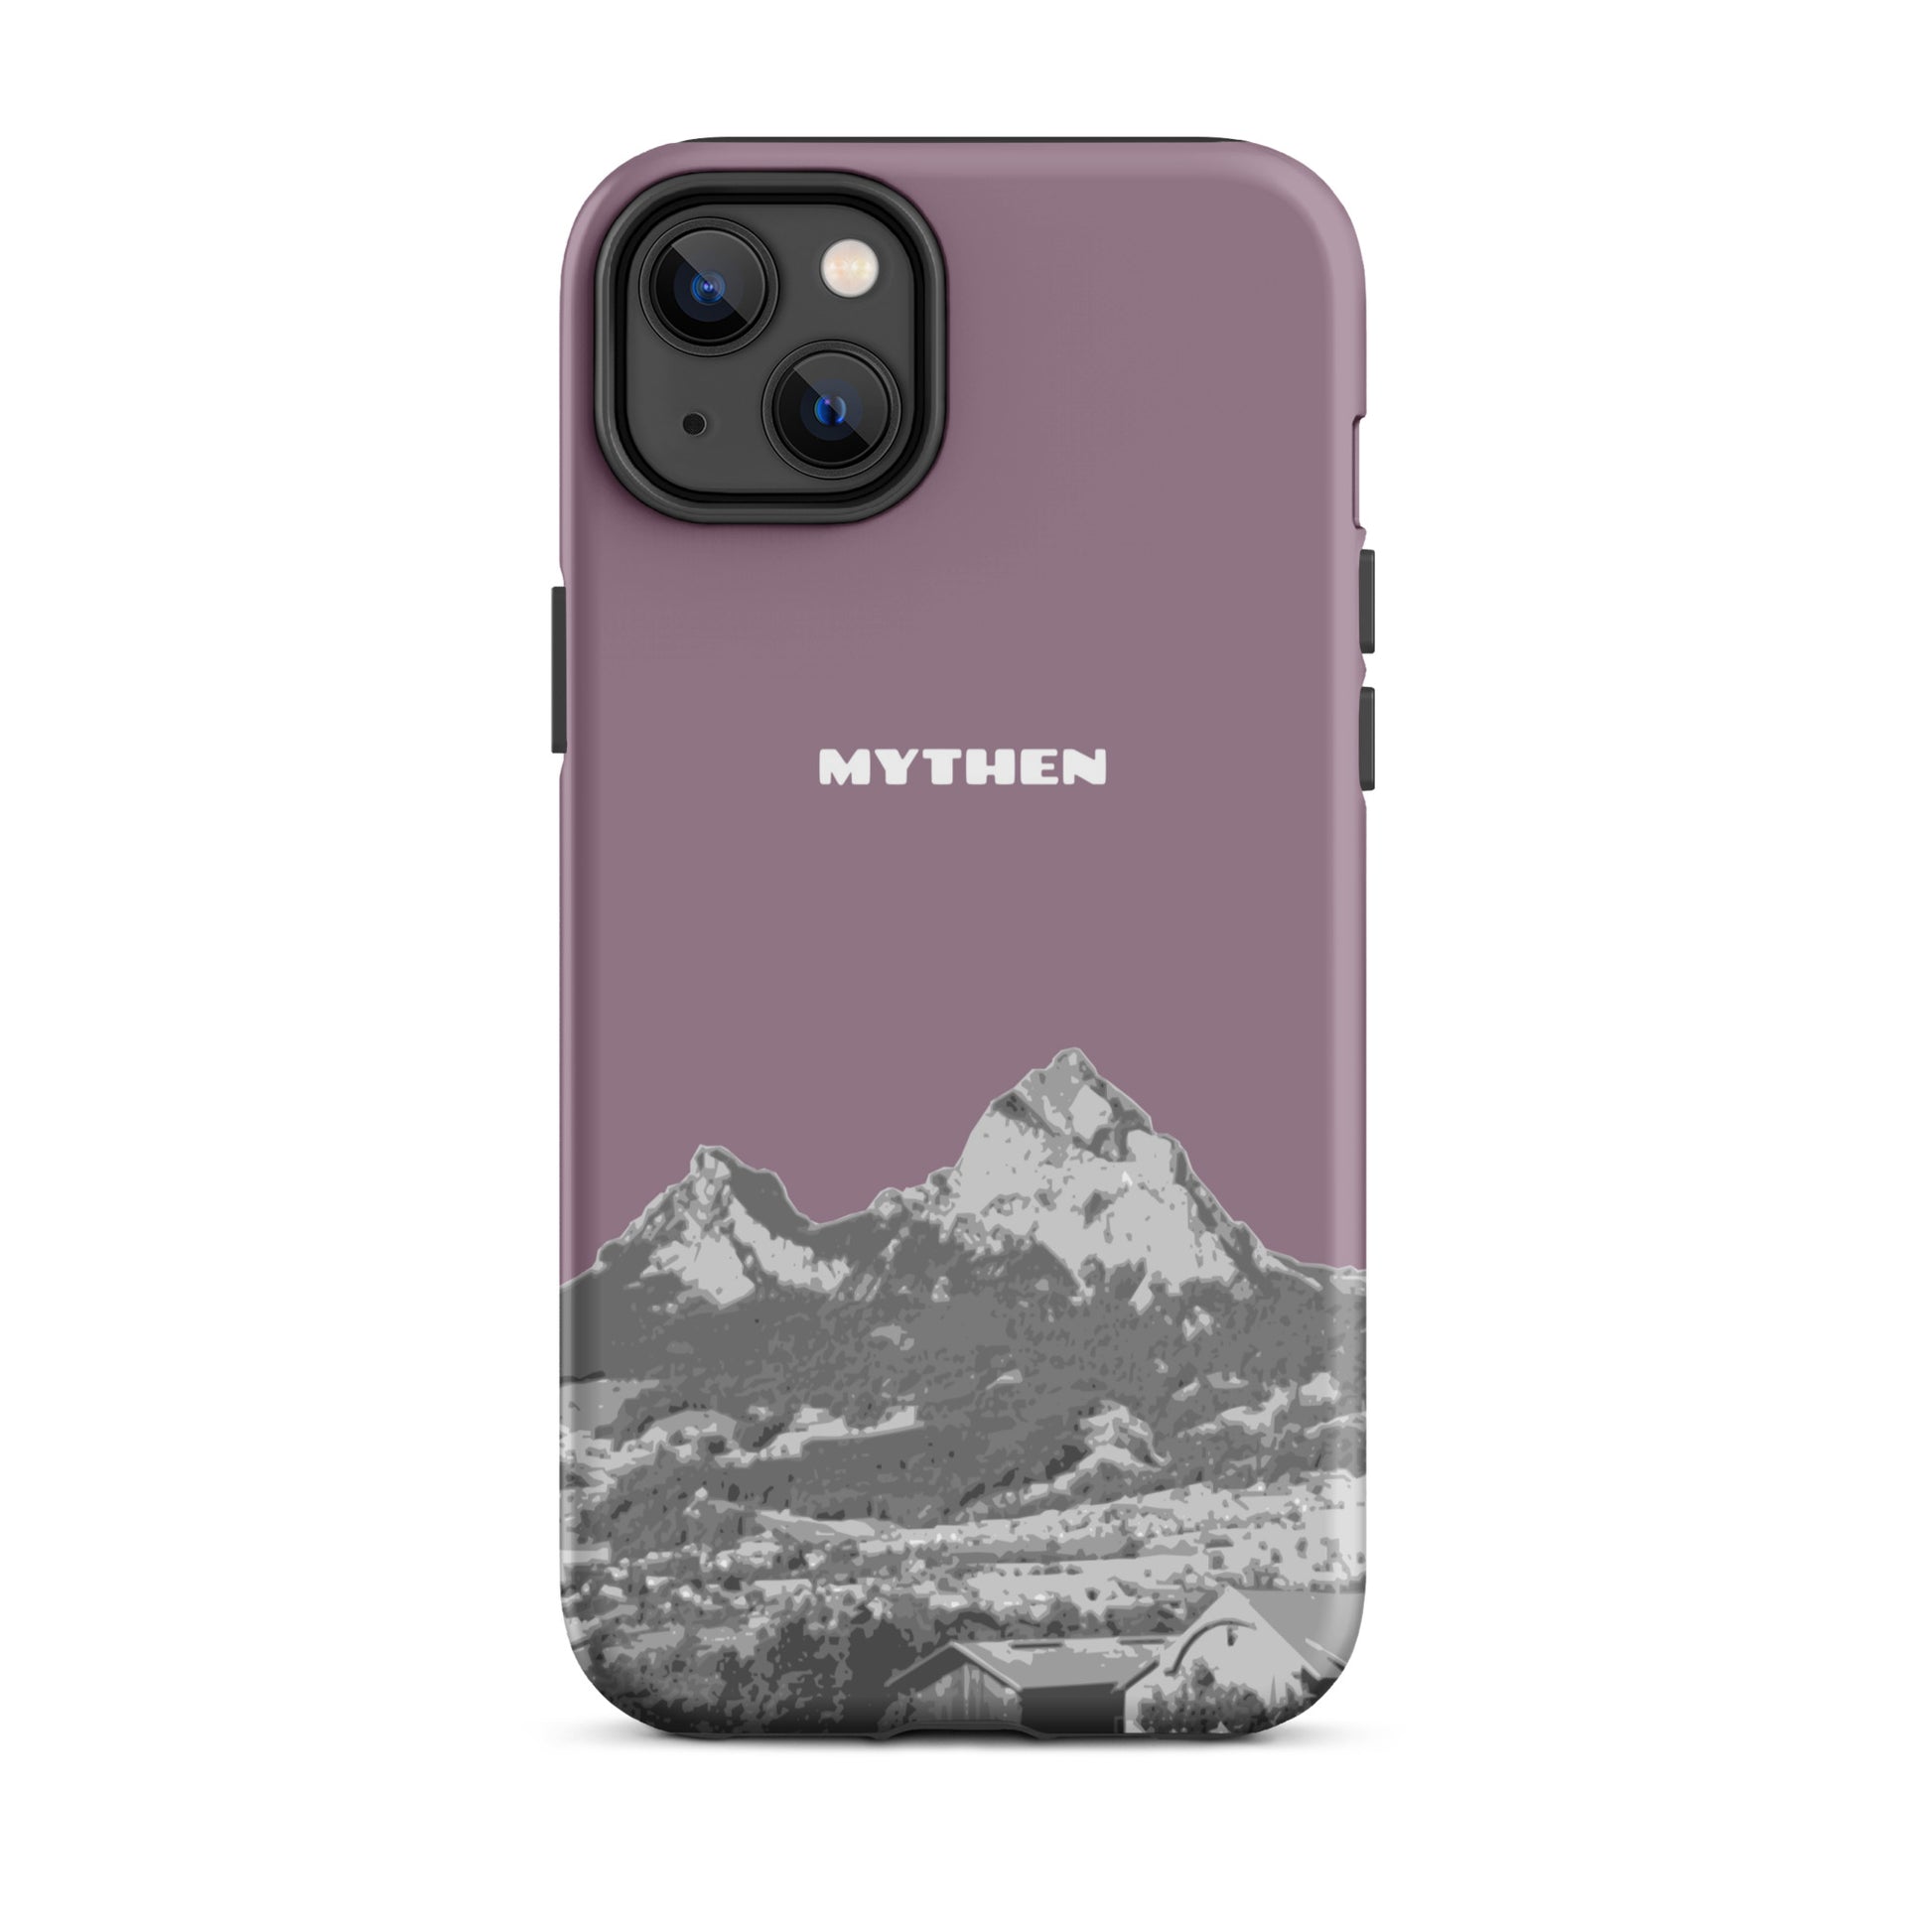 Hülle für das iPhone 14 Plus von Apple in der Farbe Pastellviolett, die den Grossen Mythen und den Kleinen Mythen bei Schwyz zeigt. 